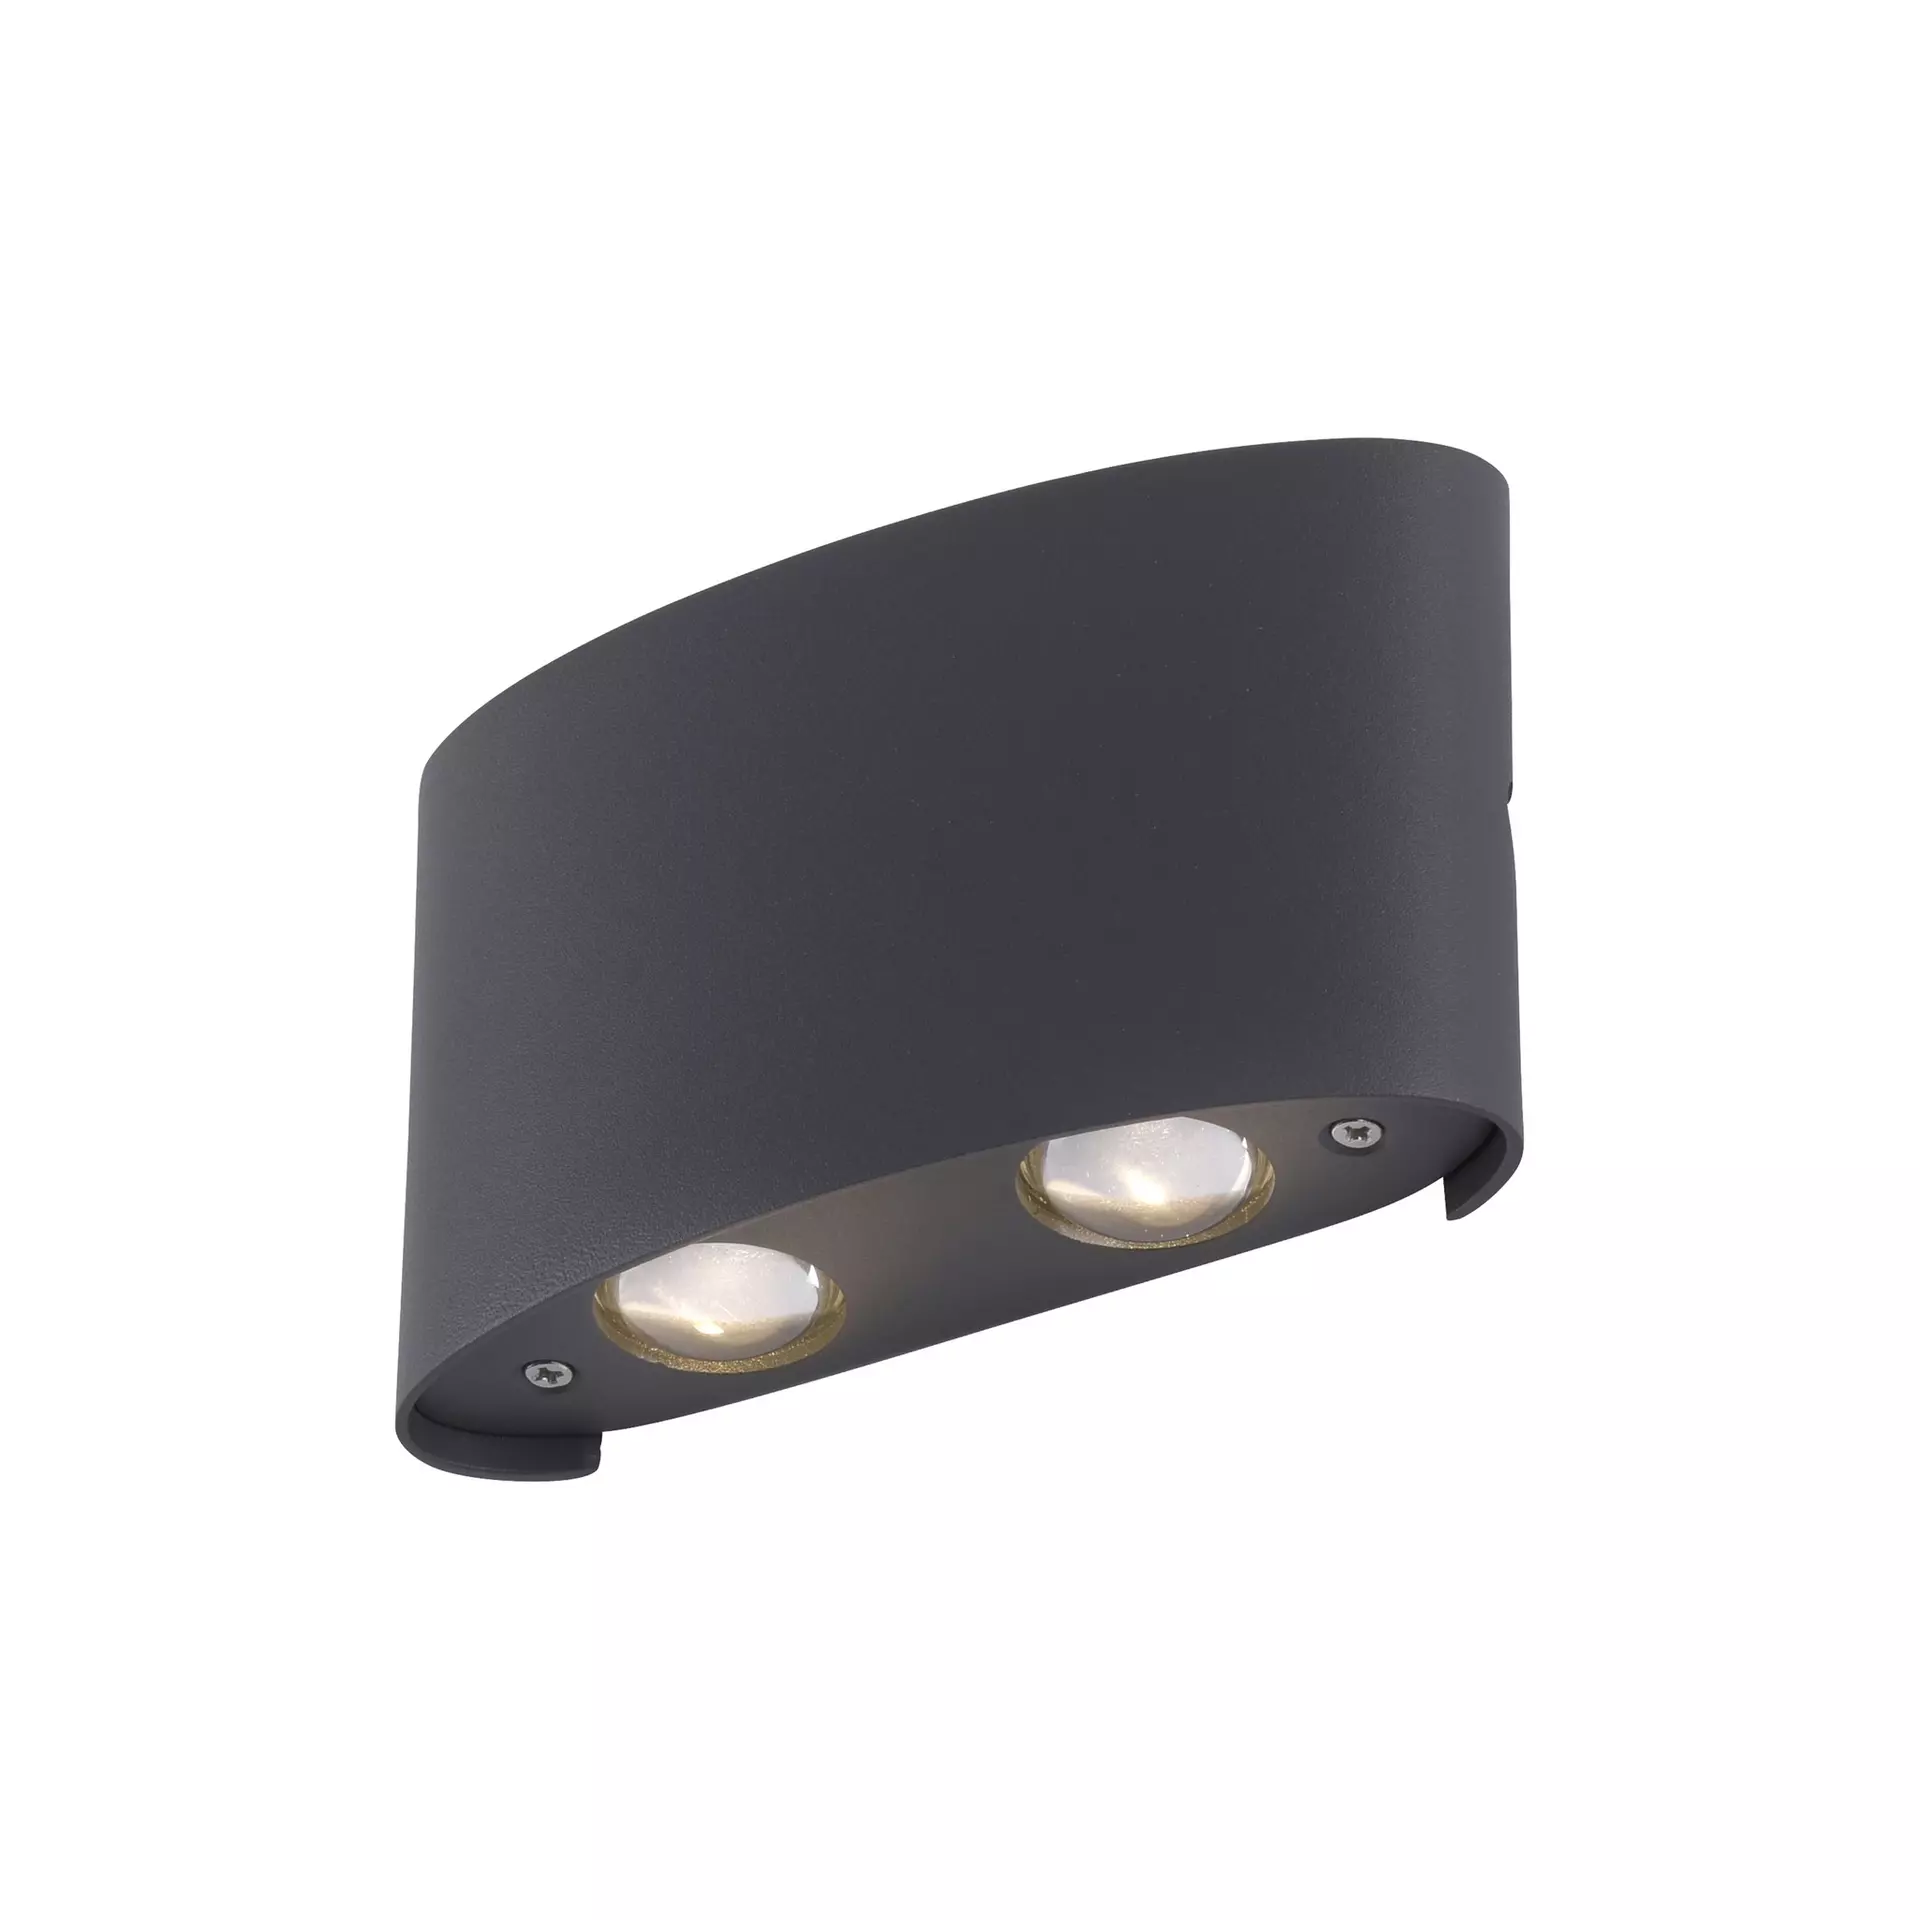 Wand-Aussenleuchte LED schwarz | Inhofer Möbel